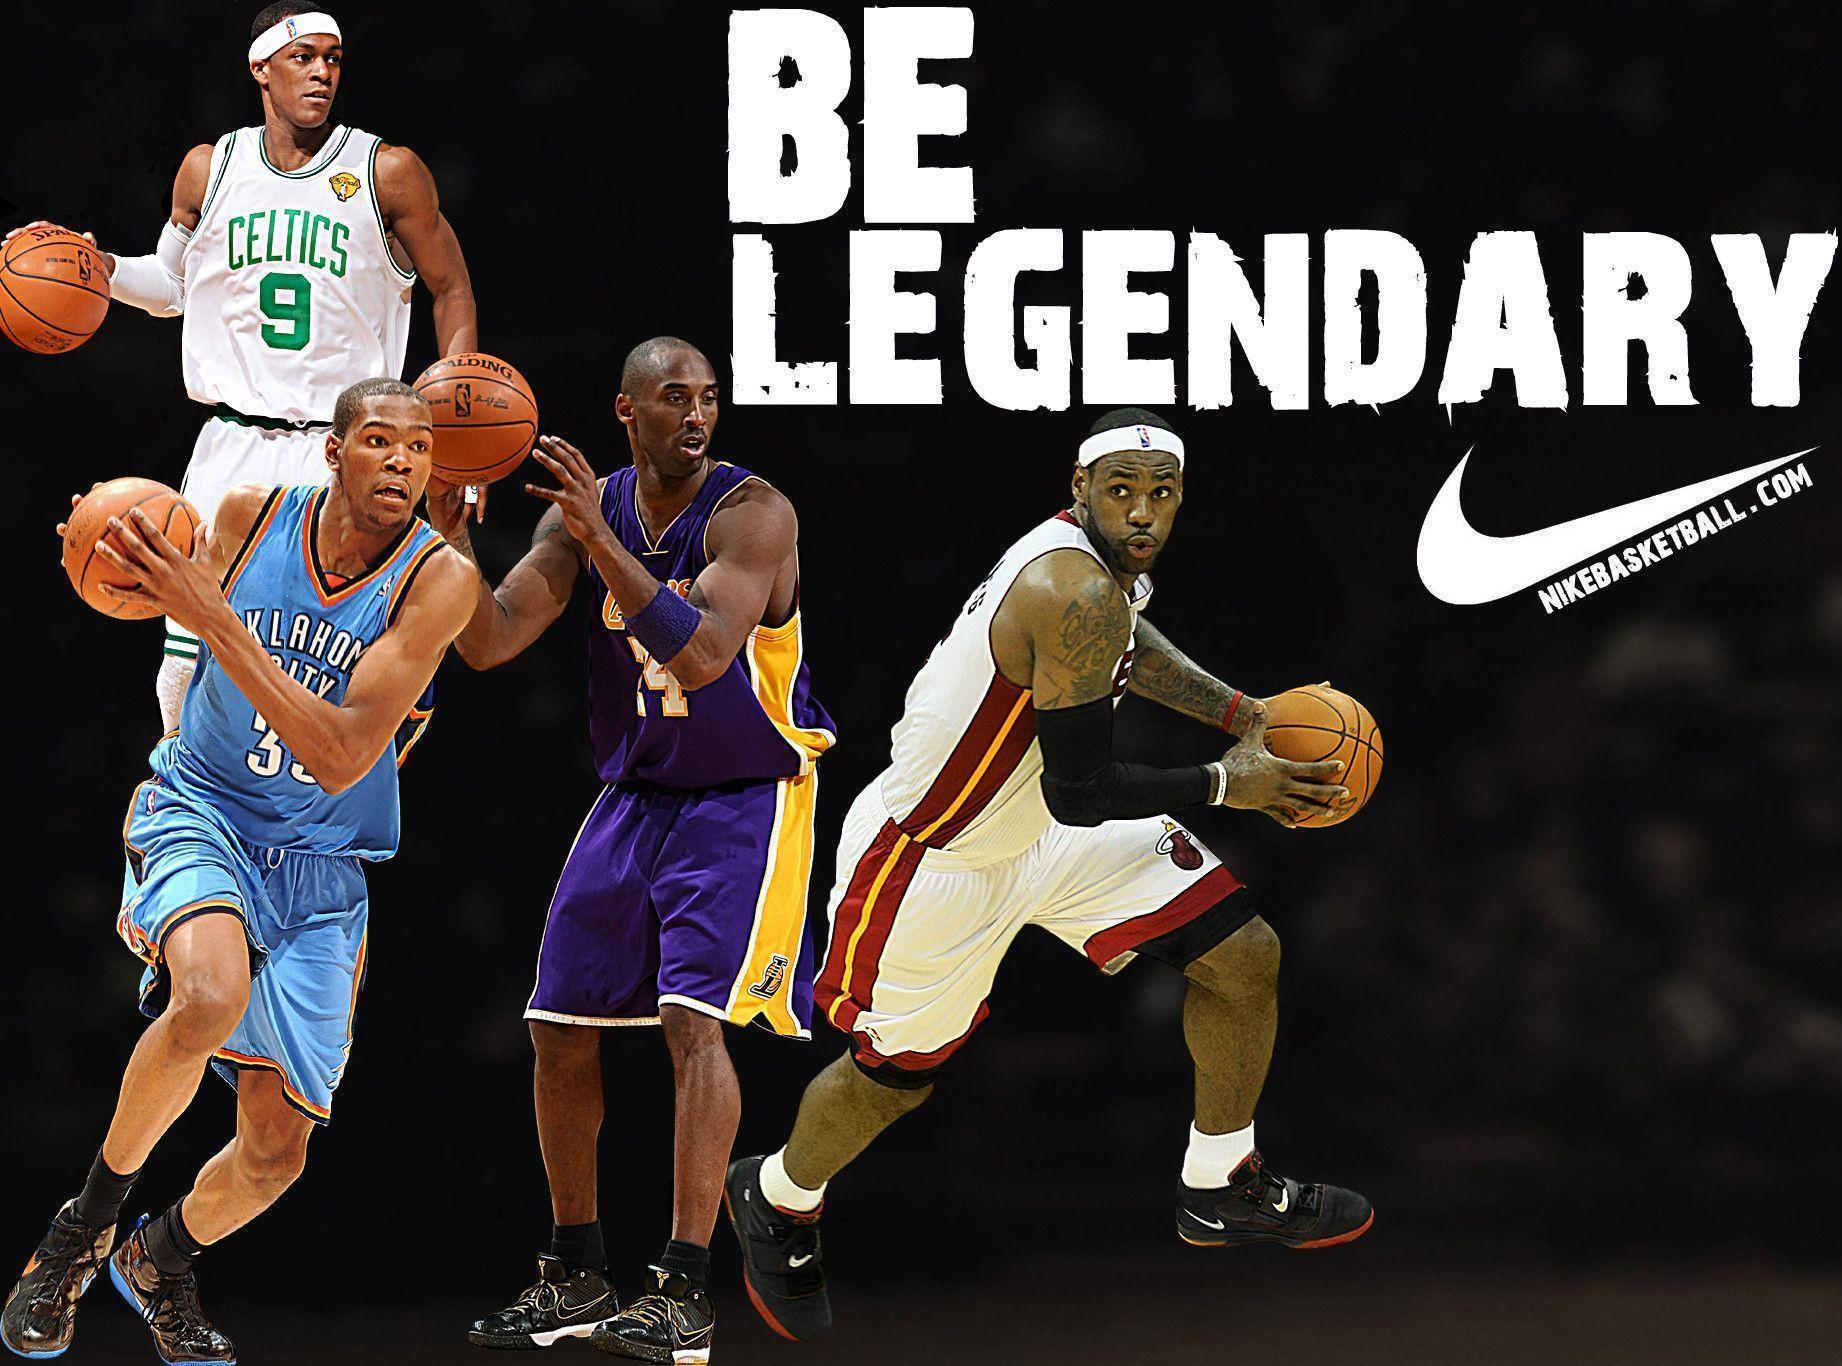 Wallpaper For > Nike Basketball Never Stops Wallpaper